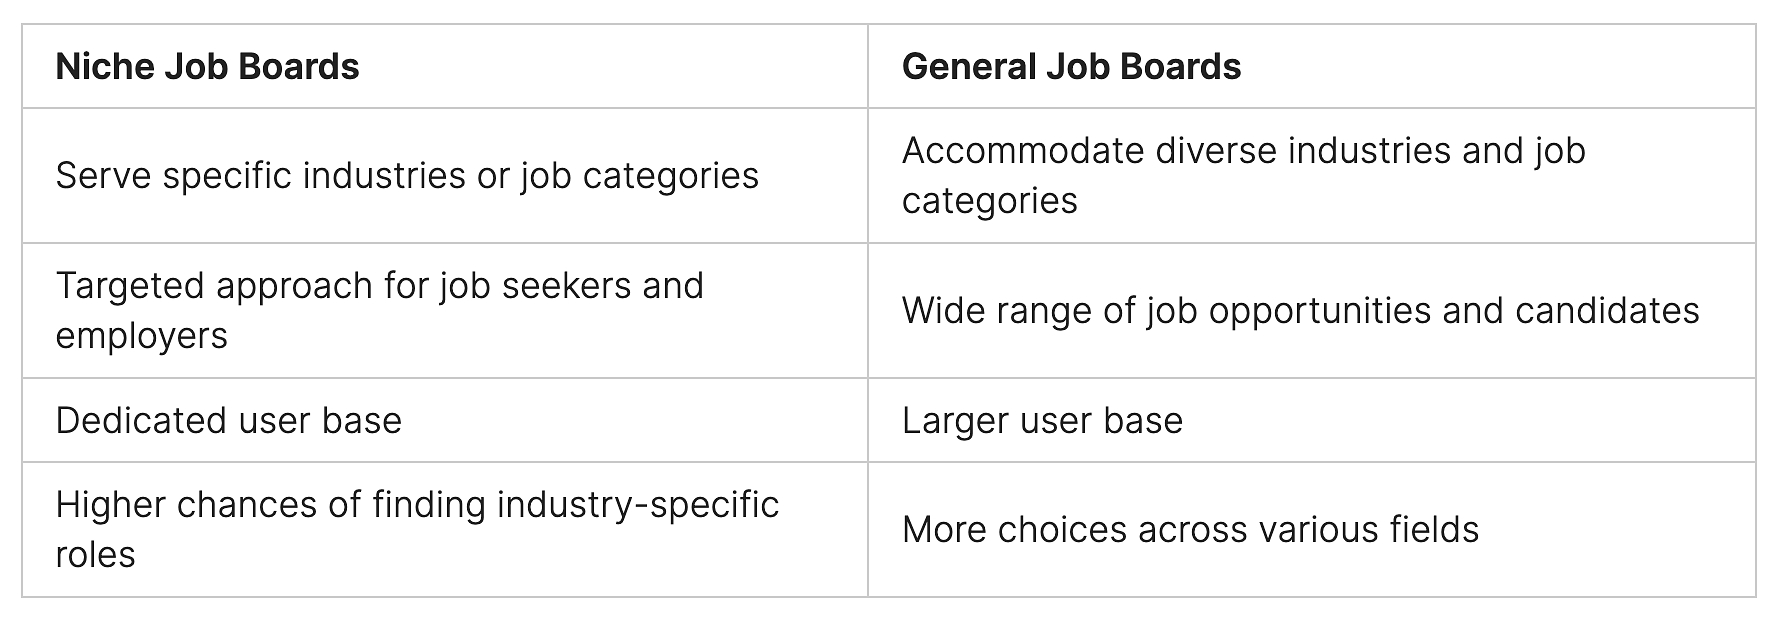 how do job boards make money